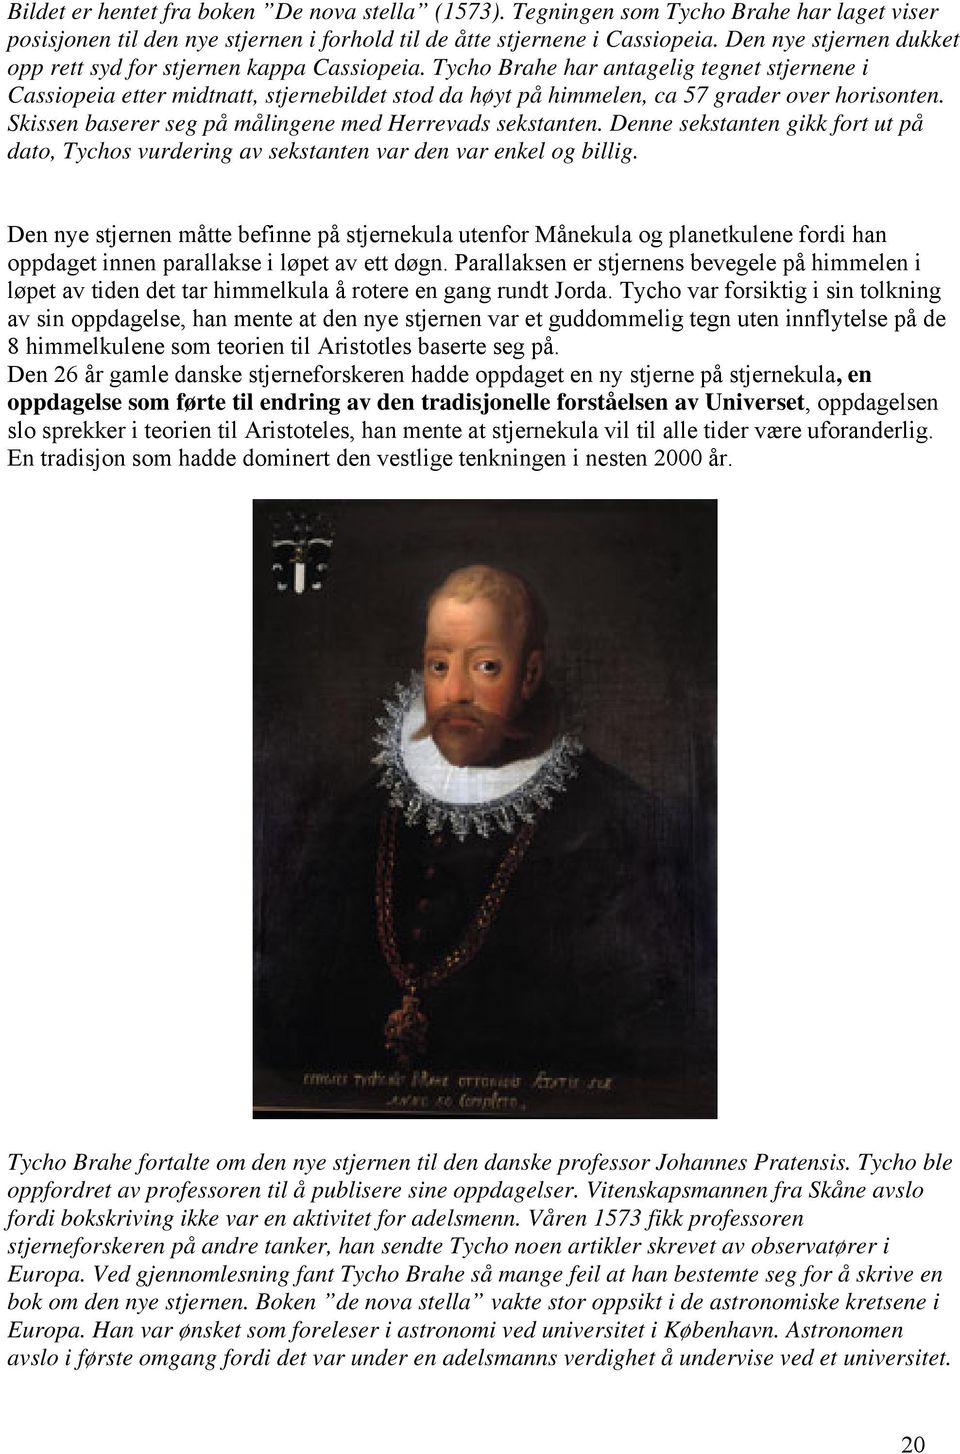 Tycho Brahe har antagelig tegnet stjernene i Cassiopeia etter midtnatt, stjernebildet stod da høyt på himmelen, ca 57 grader over horisonten. Skissen baserer seg på målingene med Herrevads sekstanten.